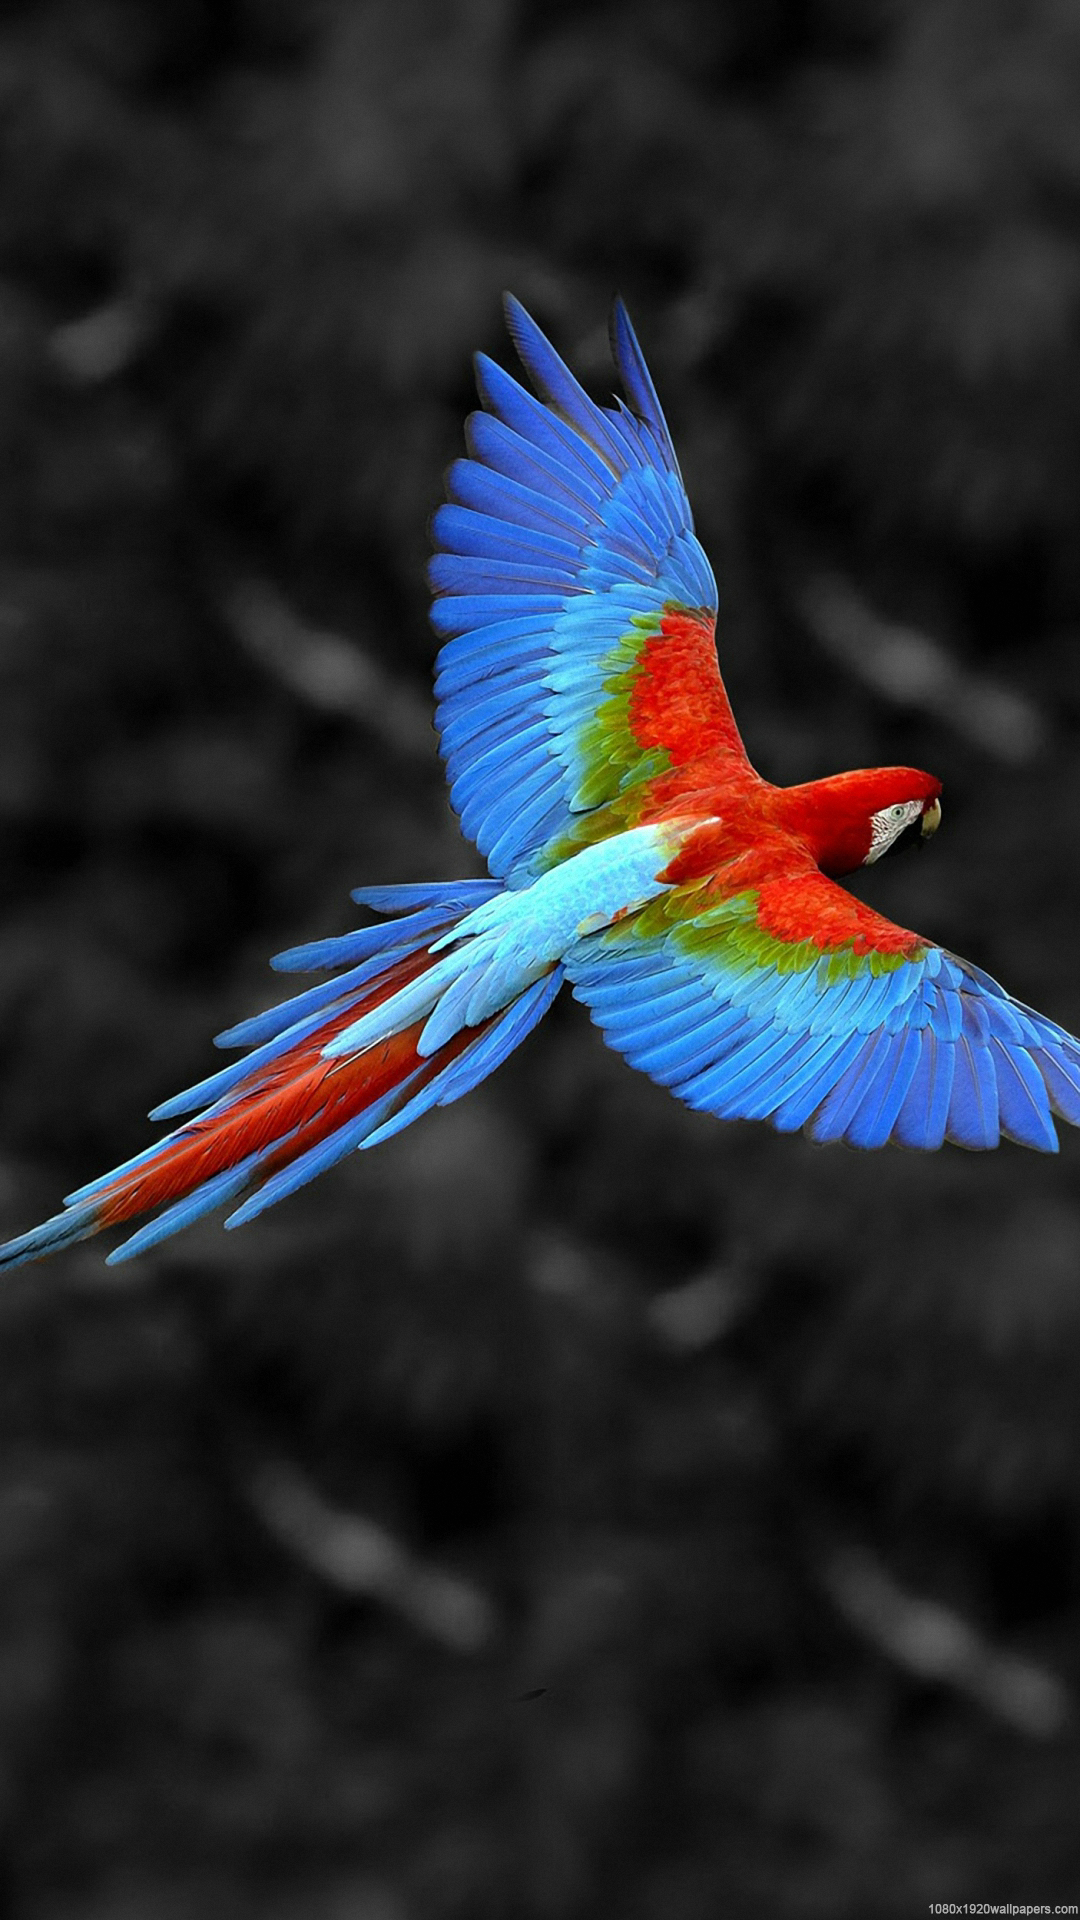 fonds d'écran hd pour iphone 6 1080p,oiseau,ara,aile,perroquet,coraciiformes